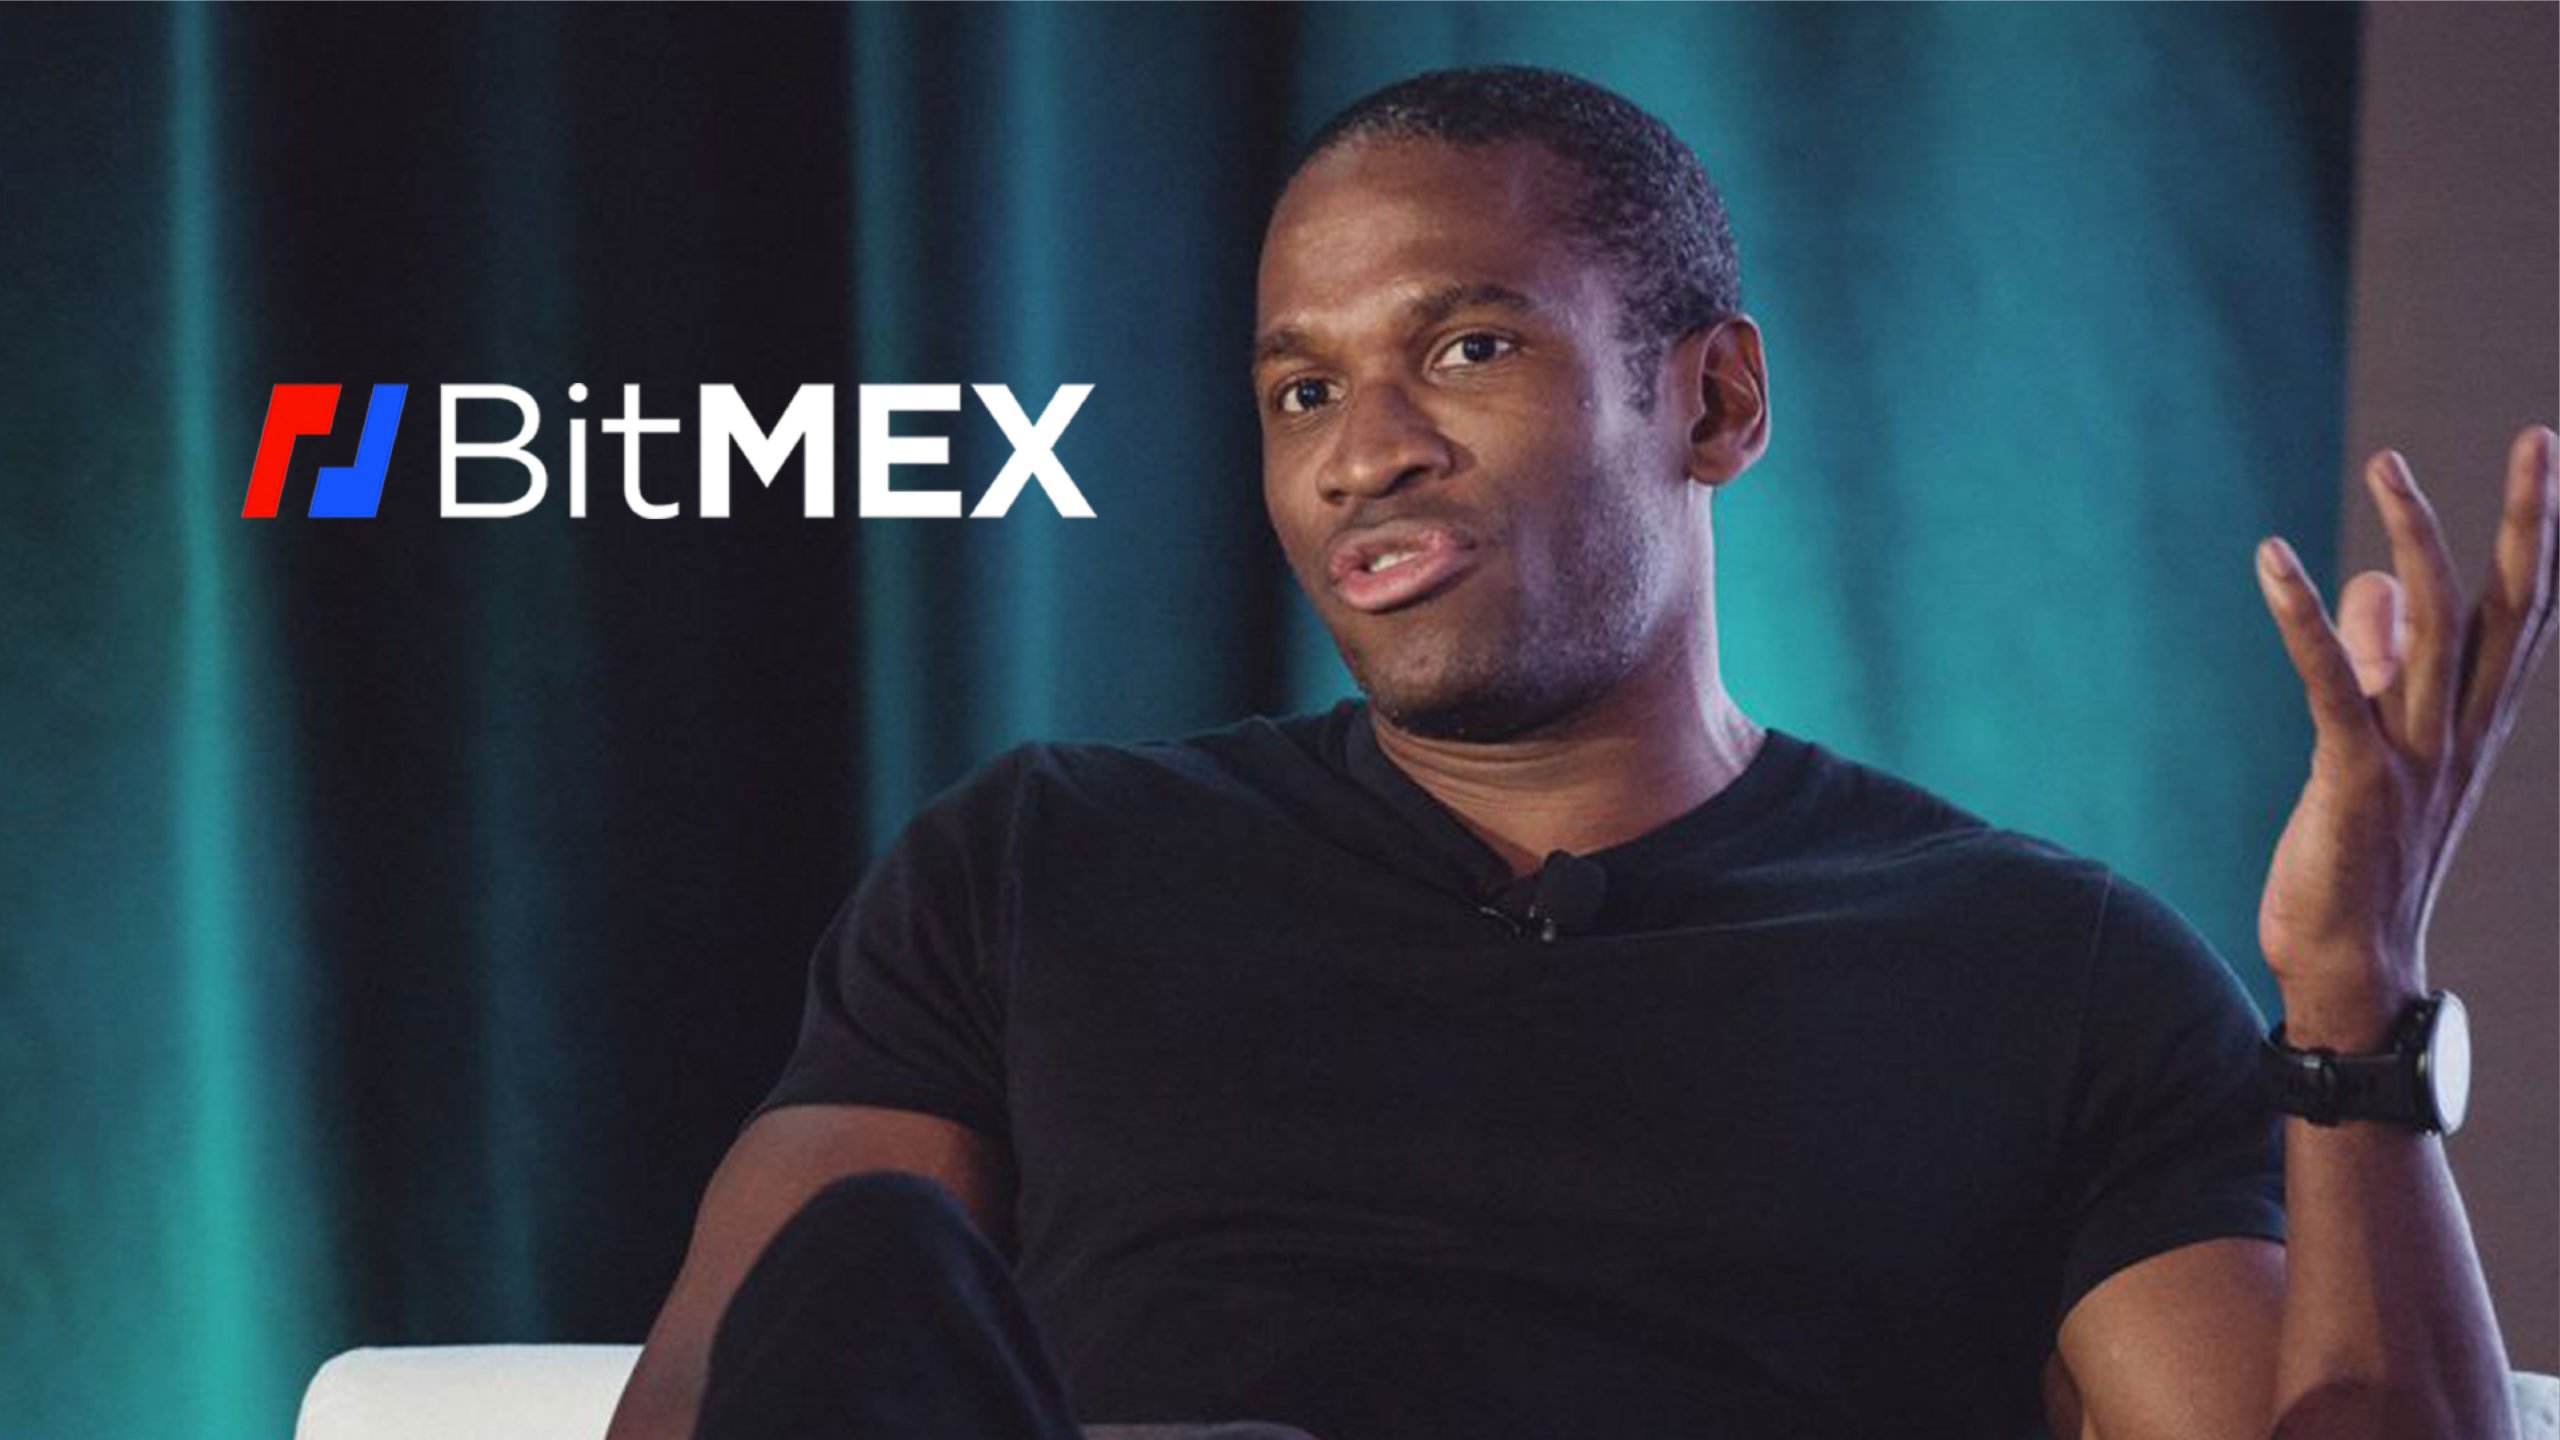 CEO da BitMEX, Arthur Hayes, falou sobre as previsões feitas de que haverá uma grande crise financeira na próxima década